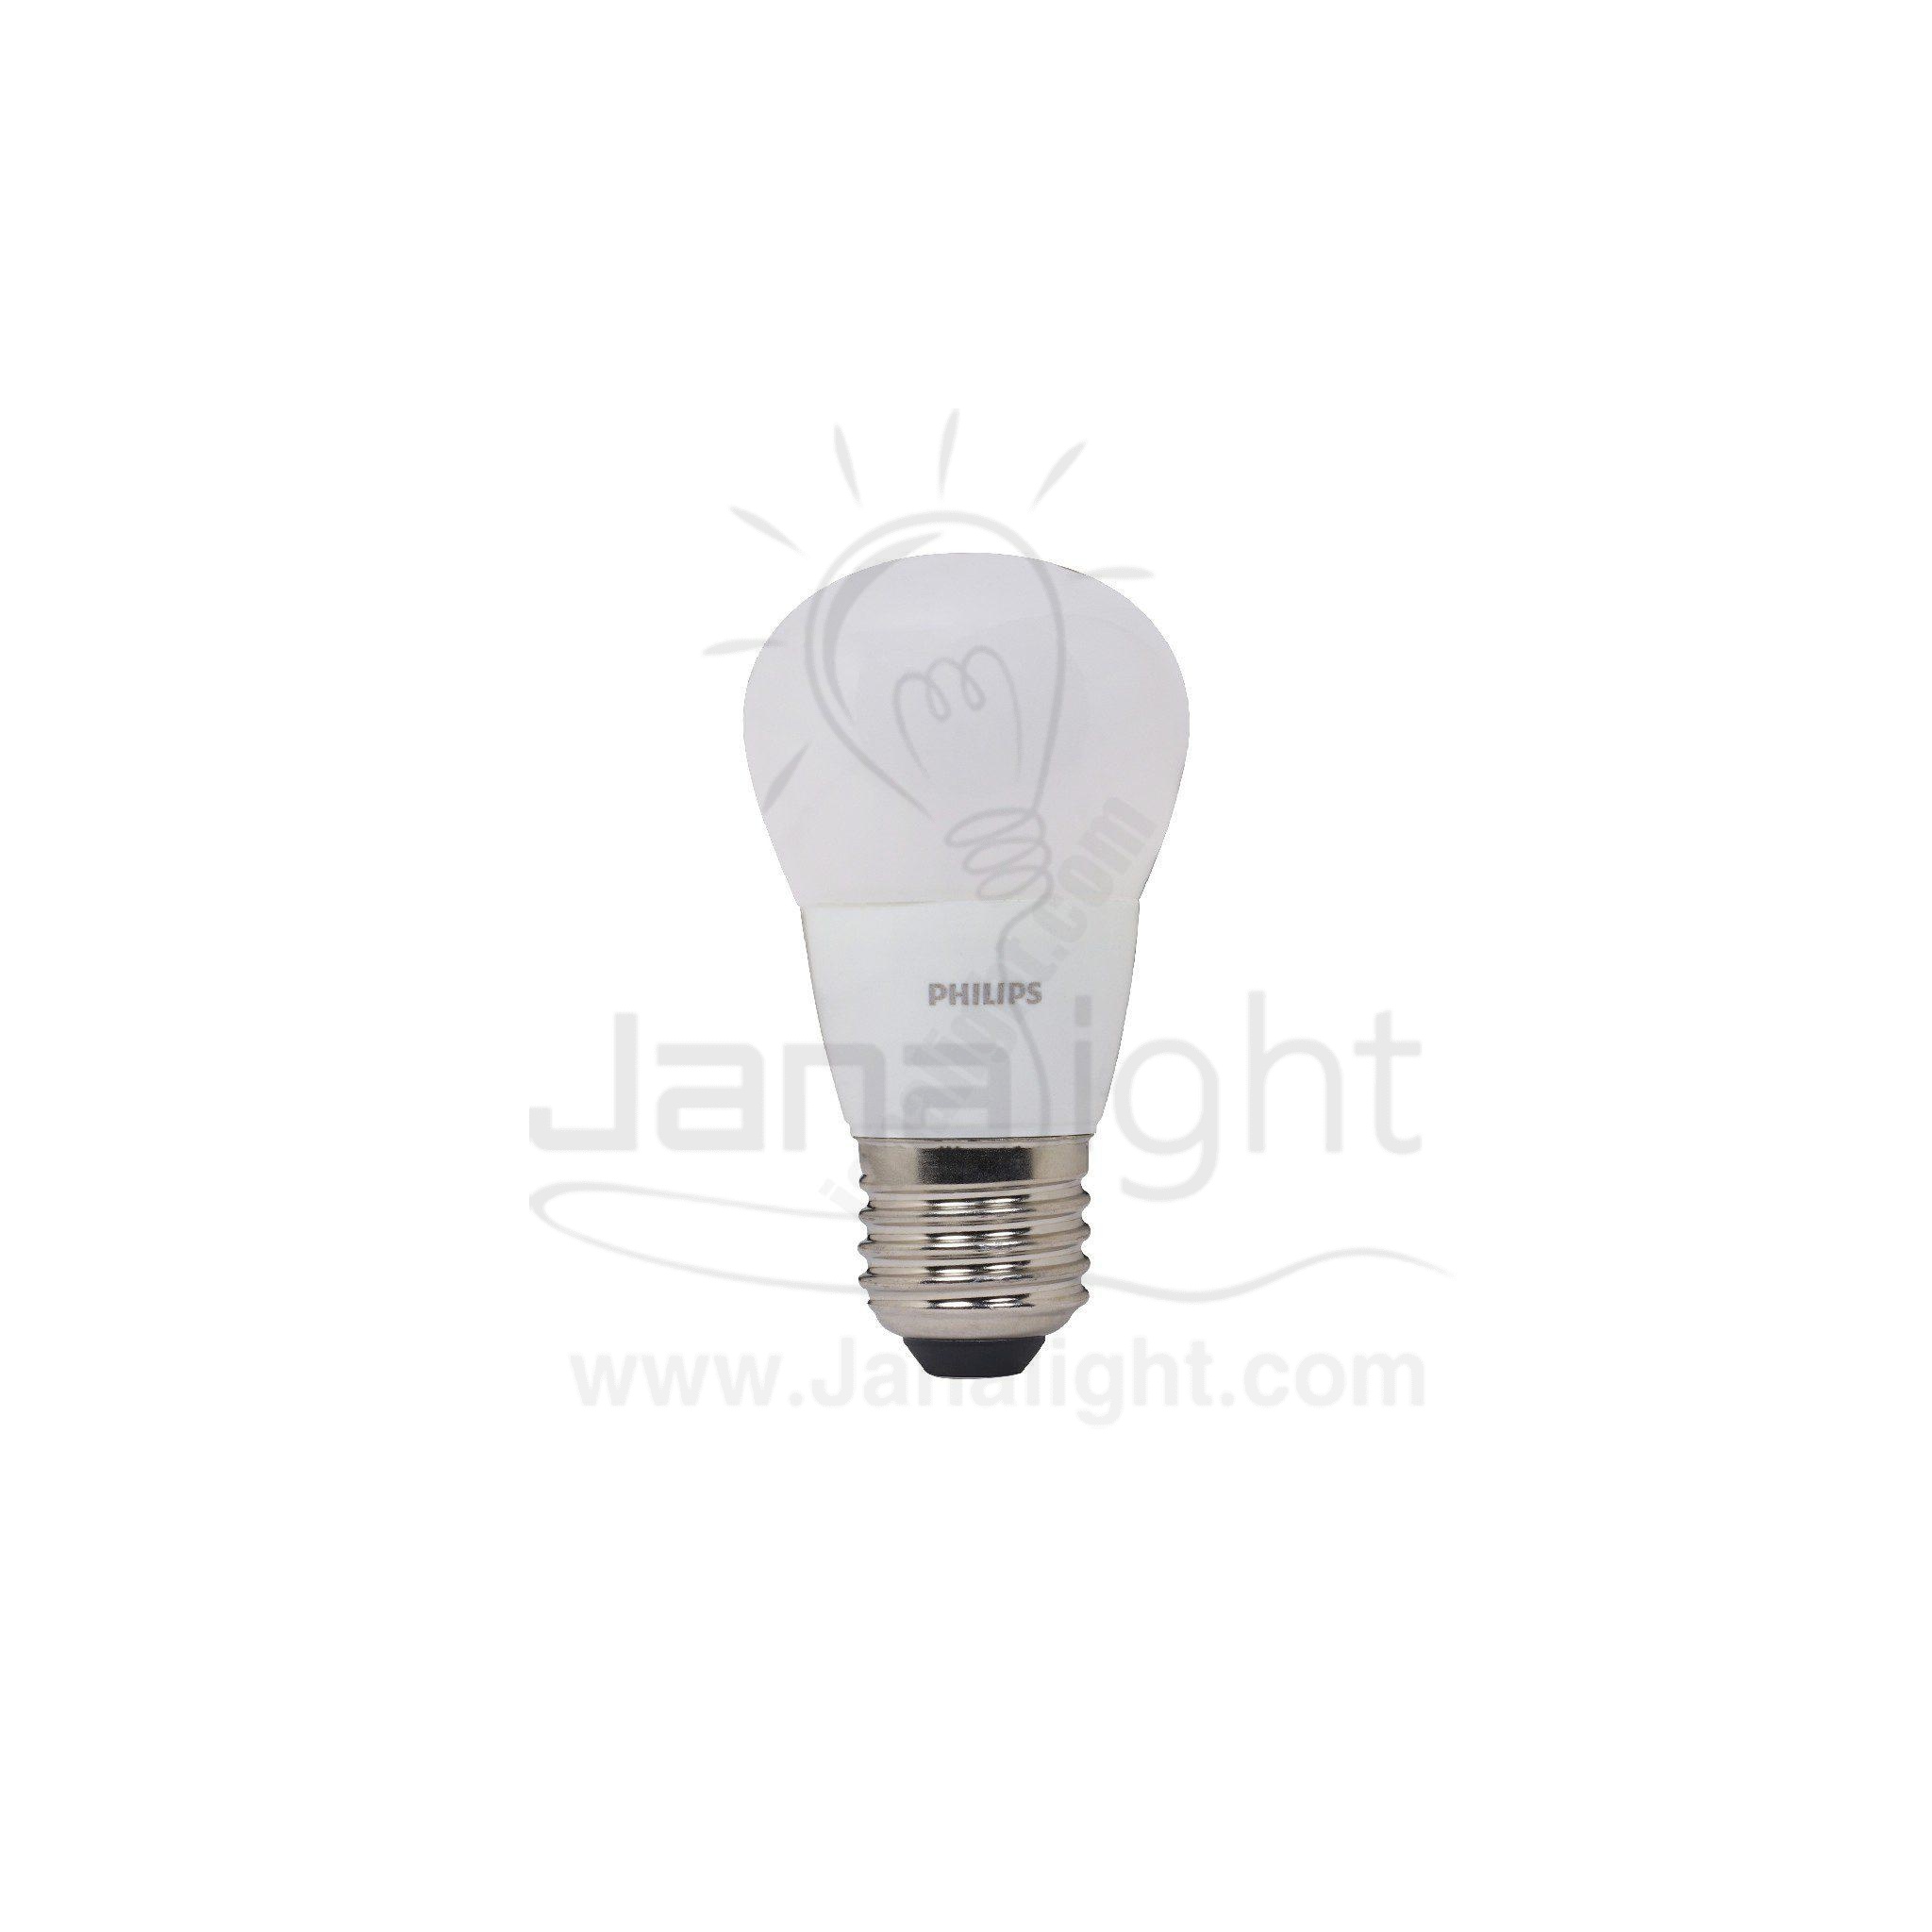 لمبة بولة اسنشيال 6.5 وات وورم فيليبس Essential LED bulb 6.5 watt warm Philips